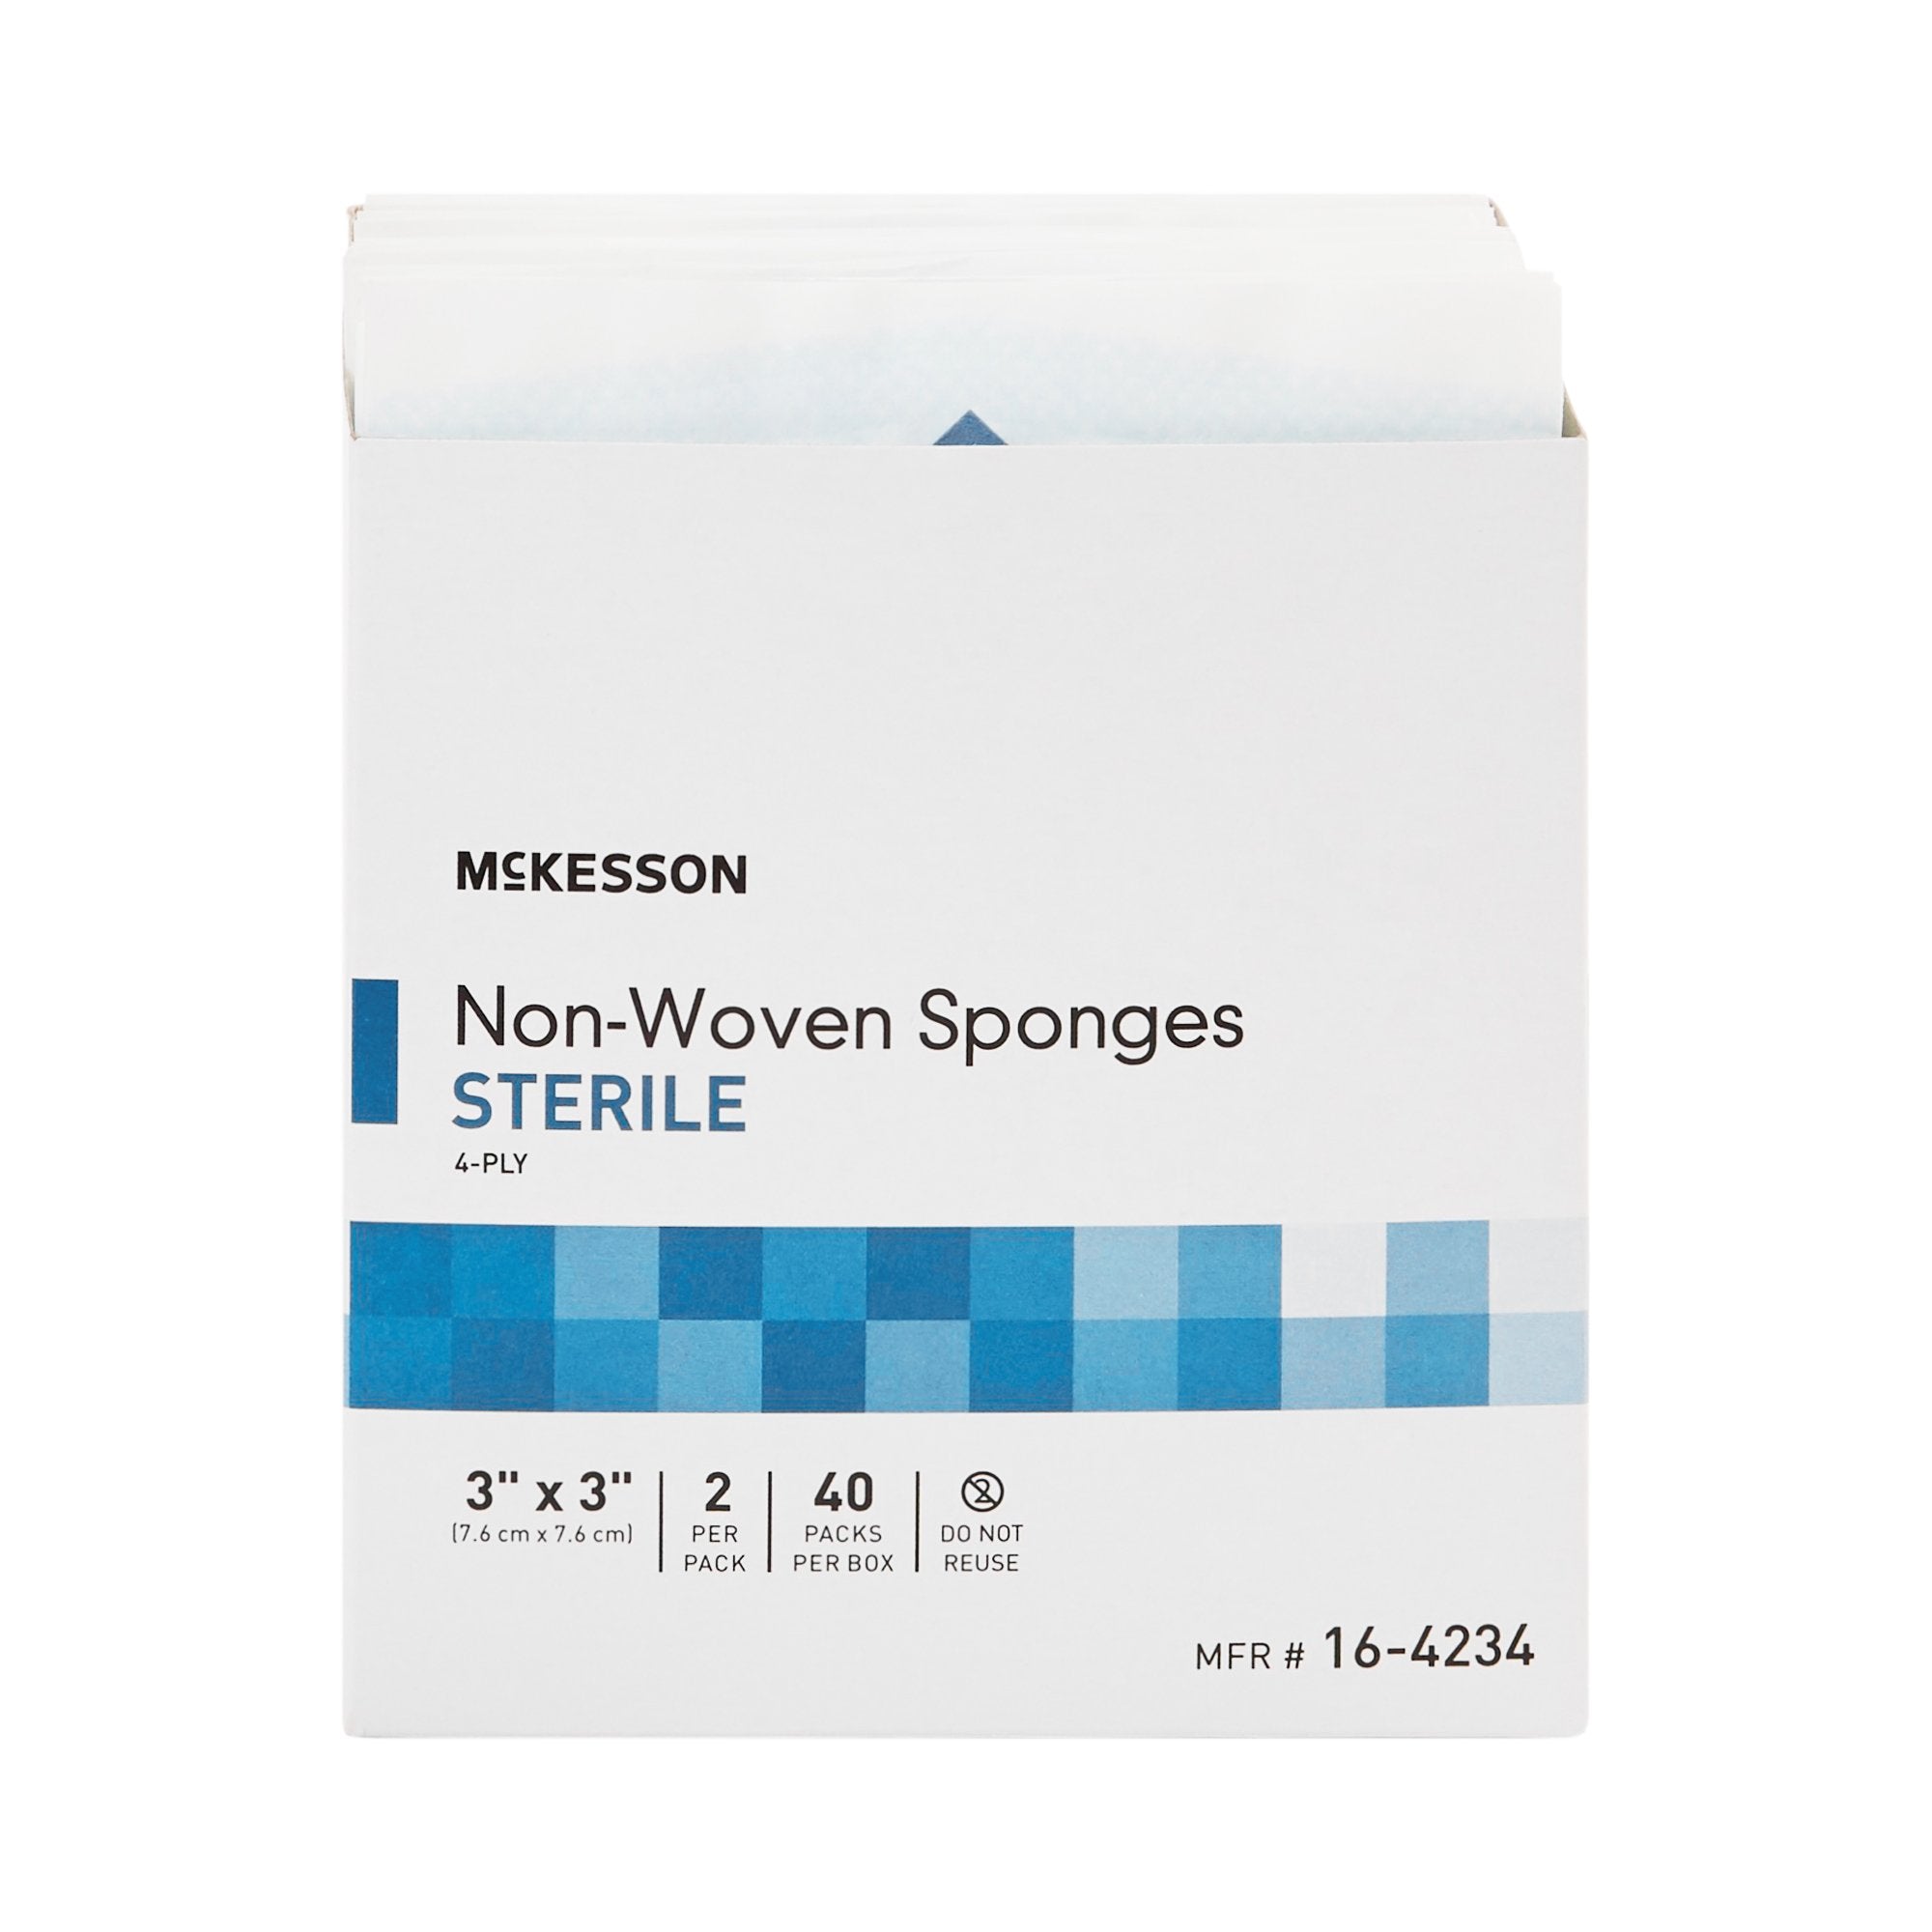 Nonwoven Sponge McKesson 3 X 3 Inch 2 per Pack Sterile 4-Ply Square